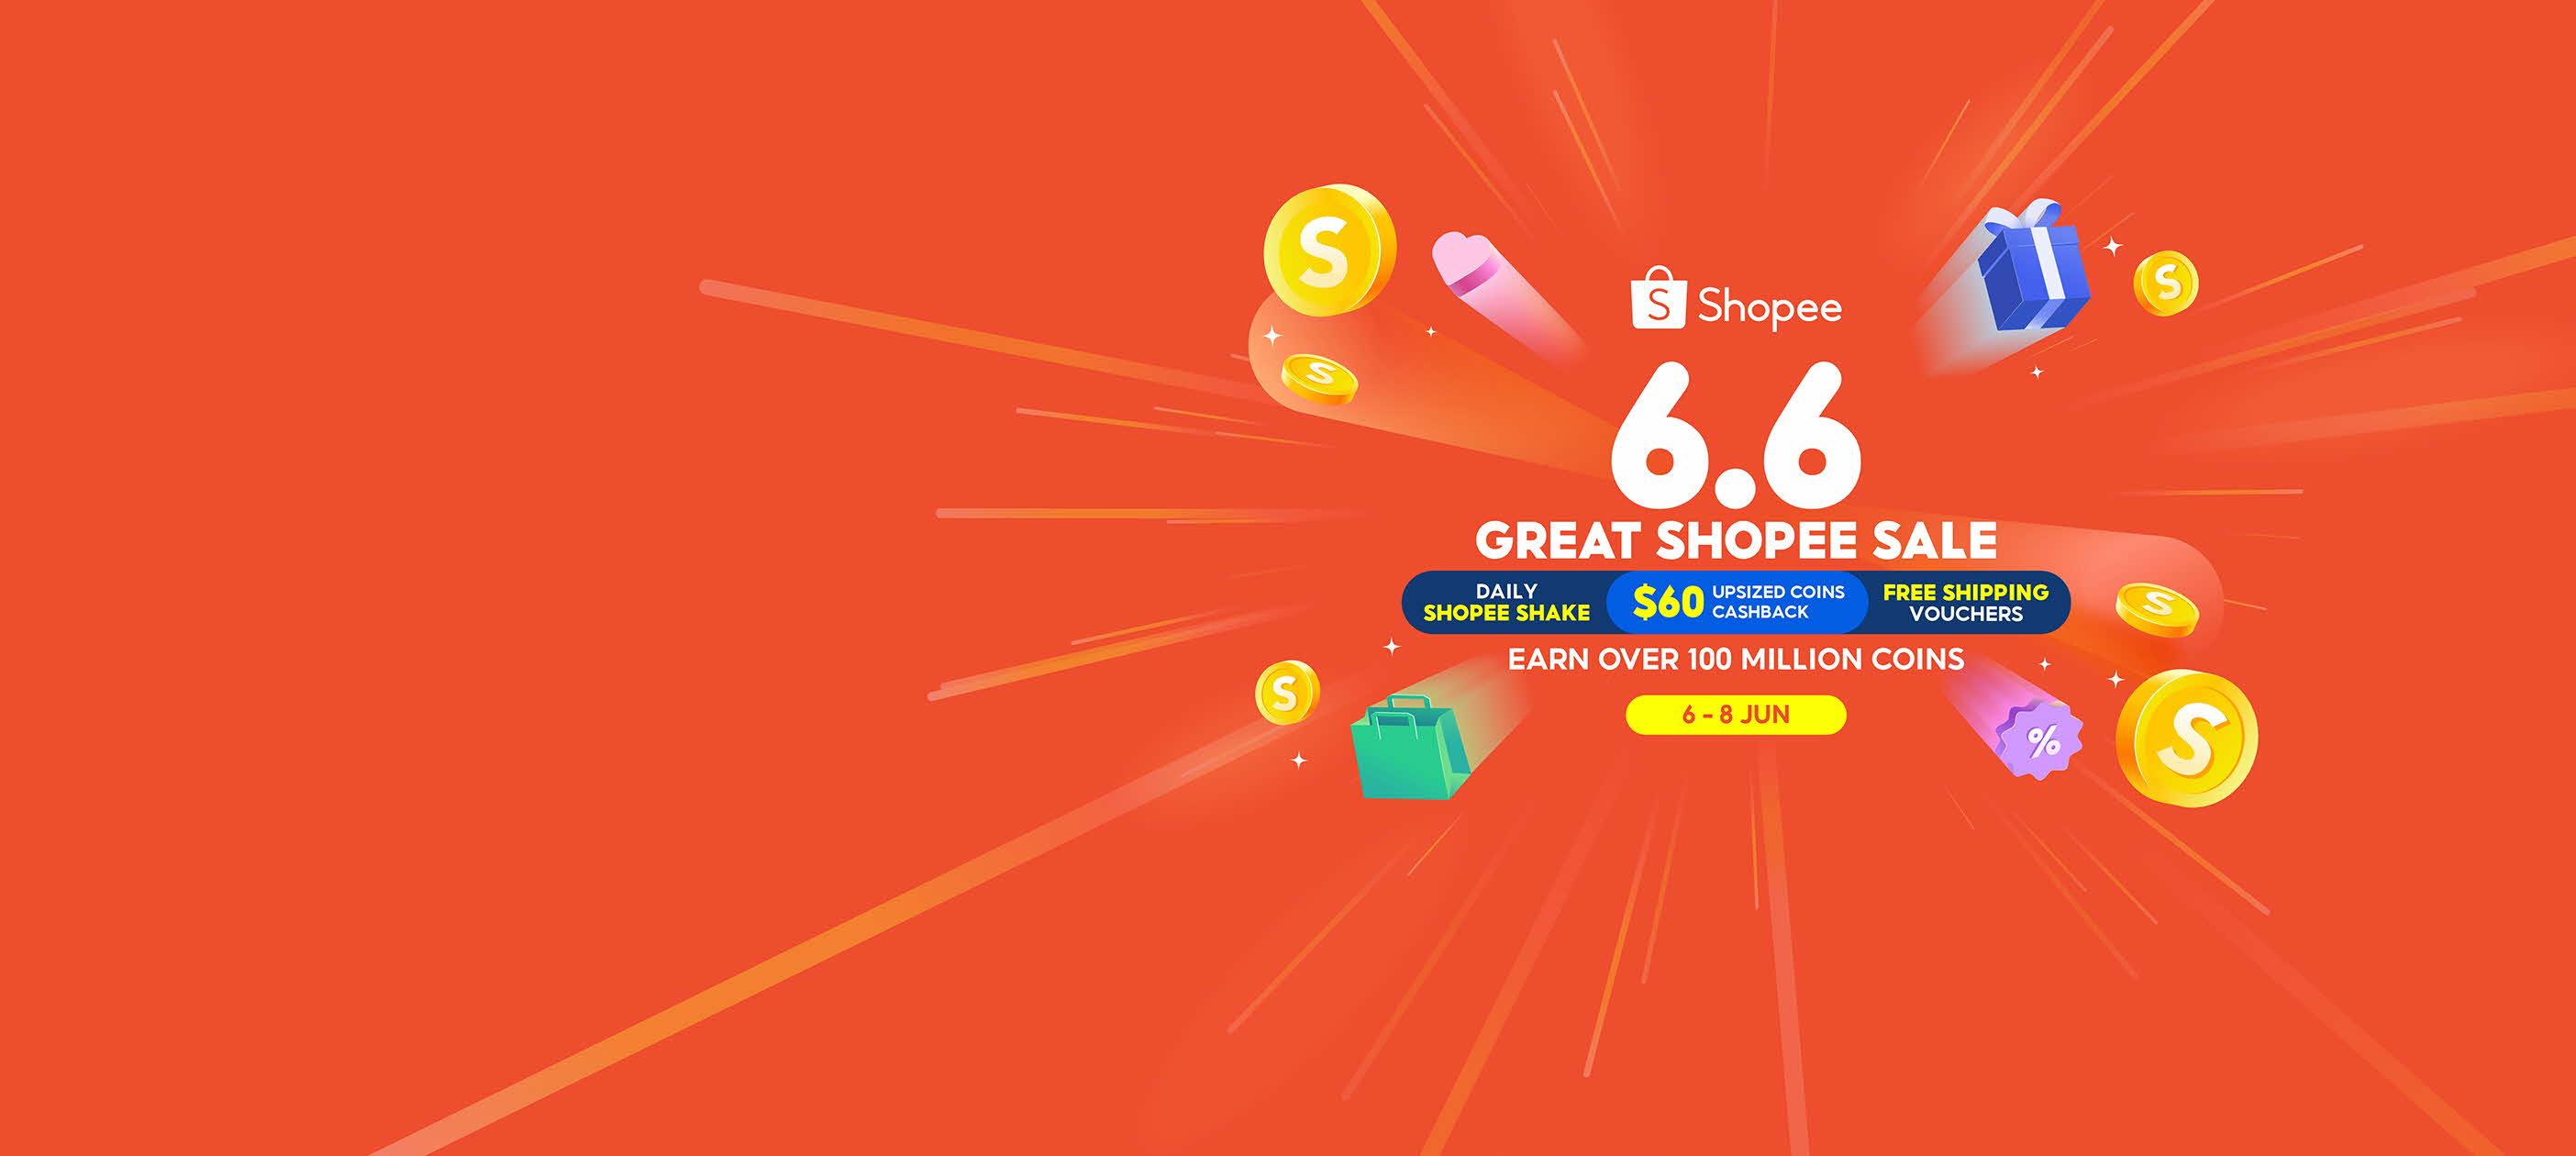 Bag more savings on Shopee 11.11 Big Sale